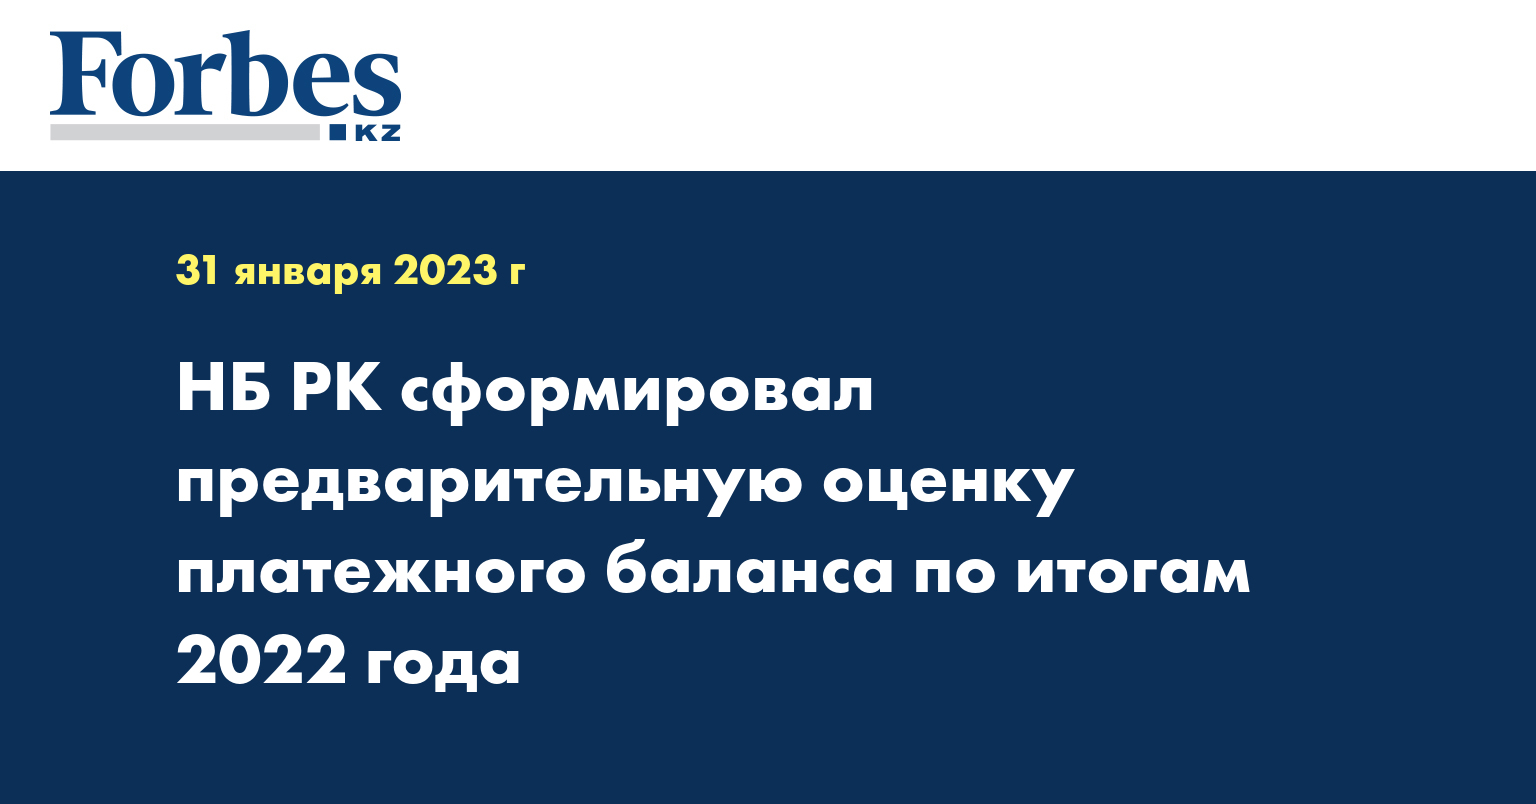 НБ РК сформировал предварительную оценку платежного баланса по итогам 2022 года